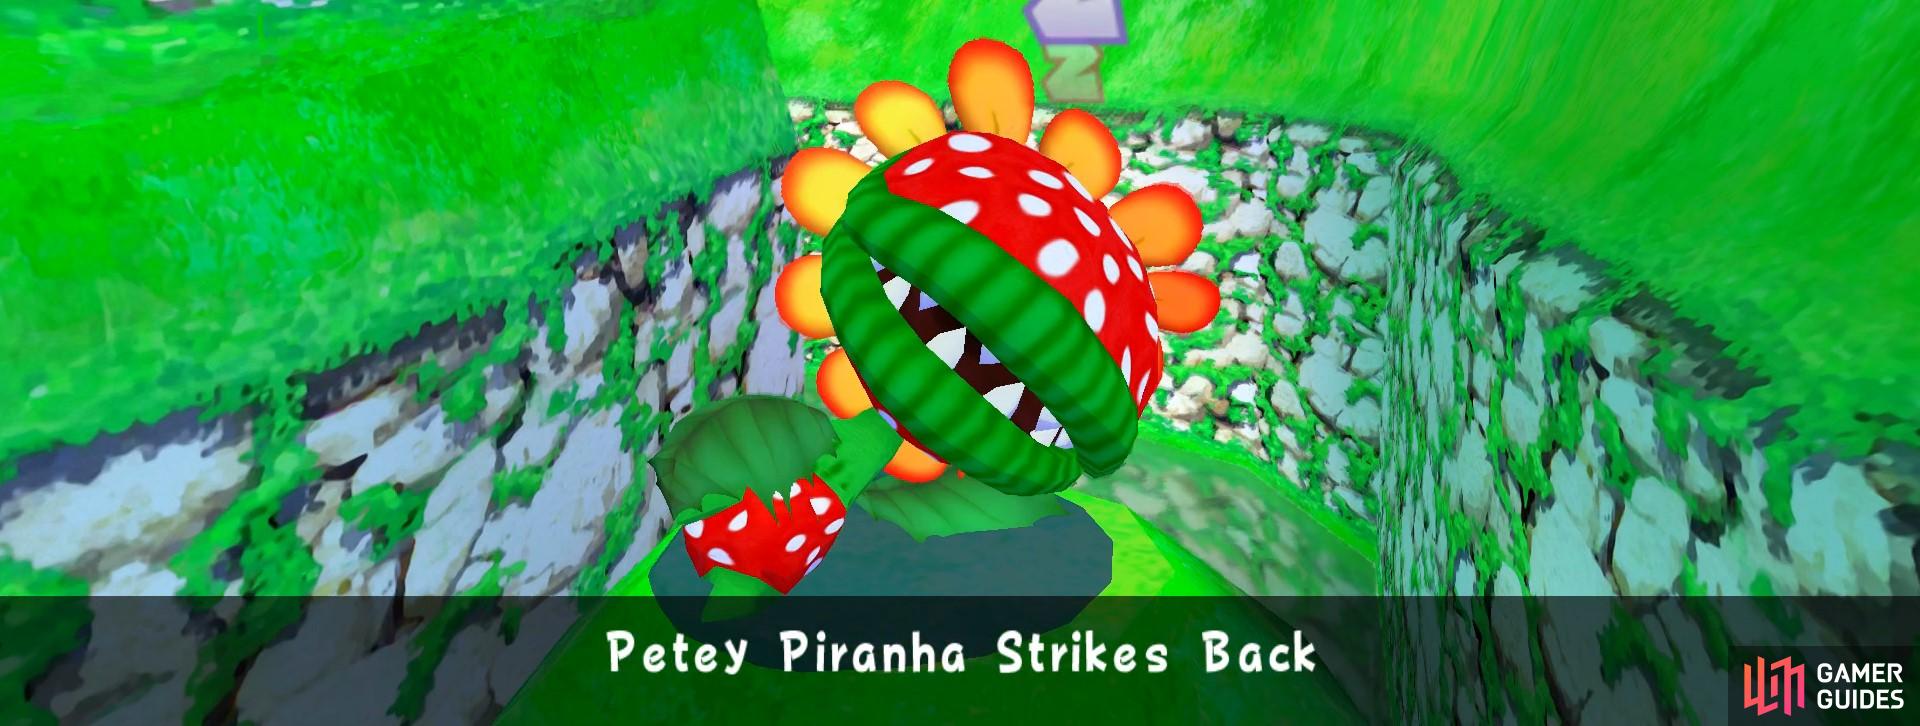 petey piranha sprites